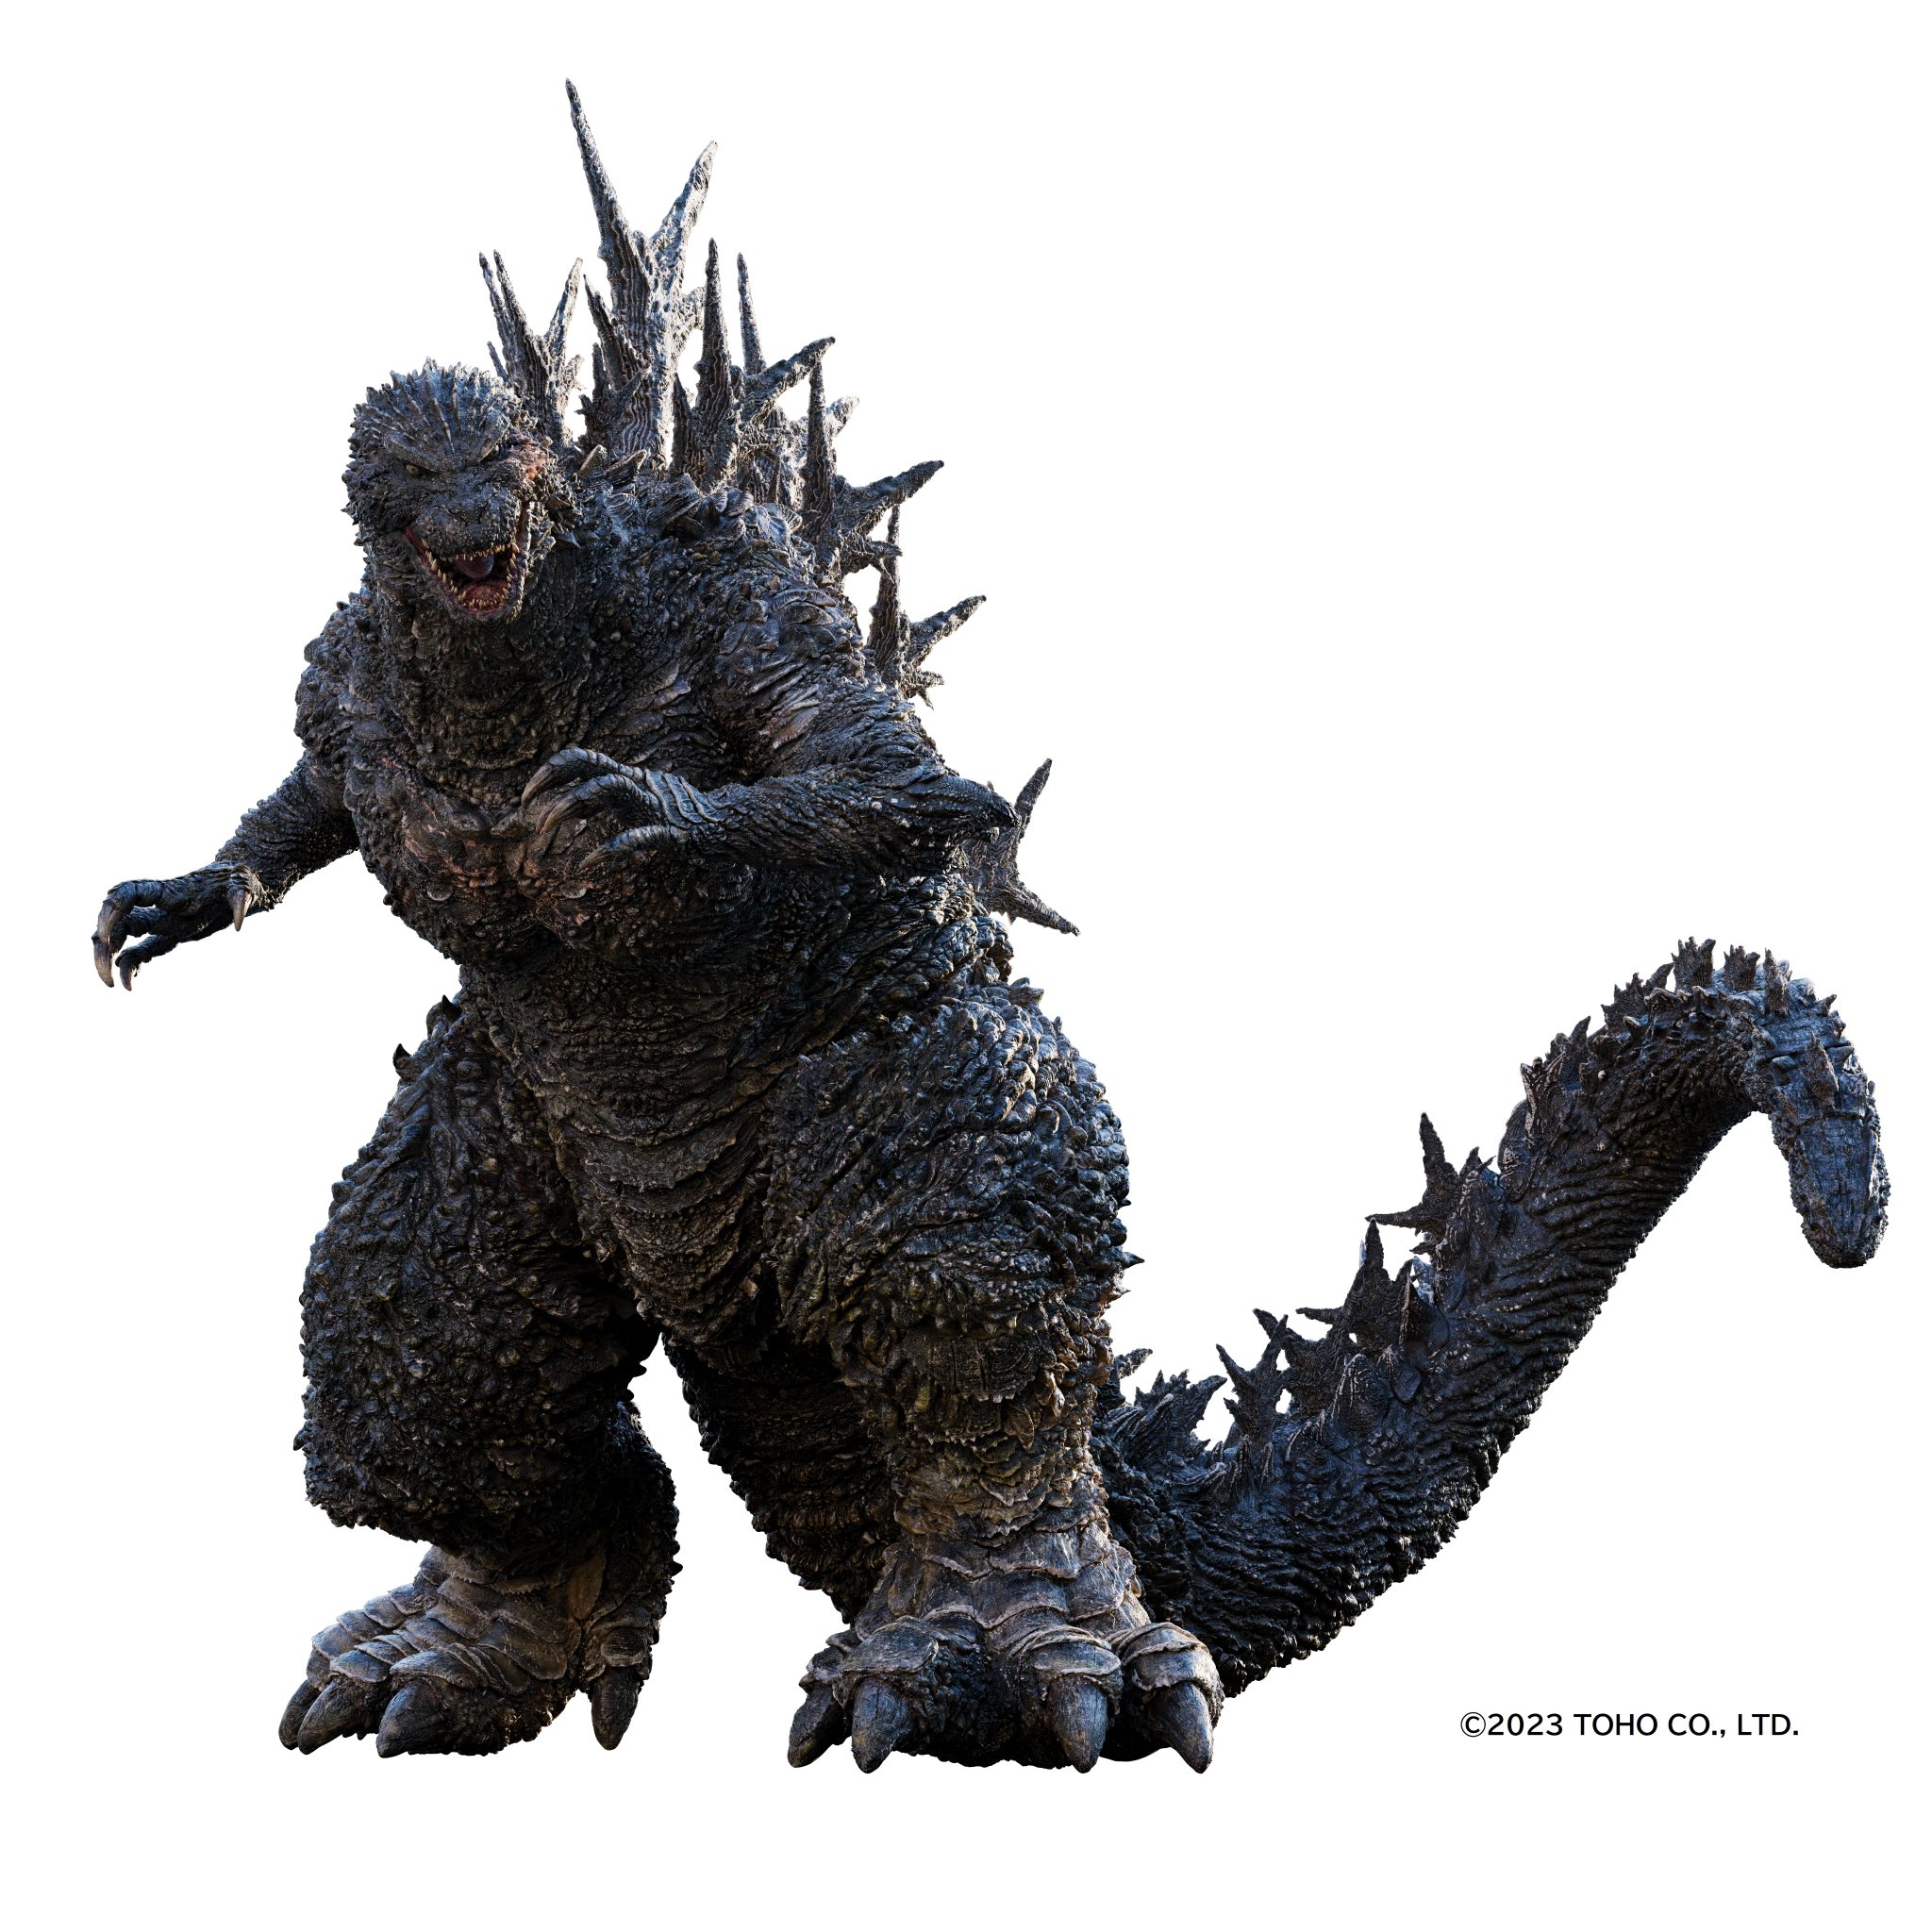 Godzilla Ultima, Monsterverse Motions Universe Wiki